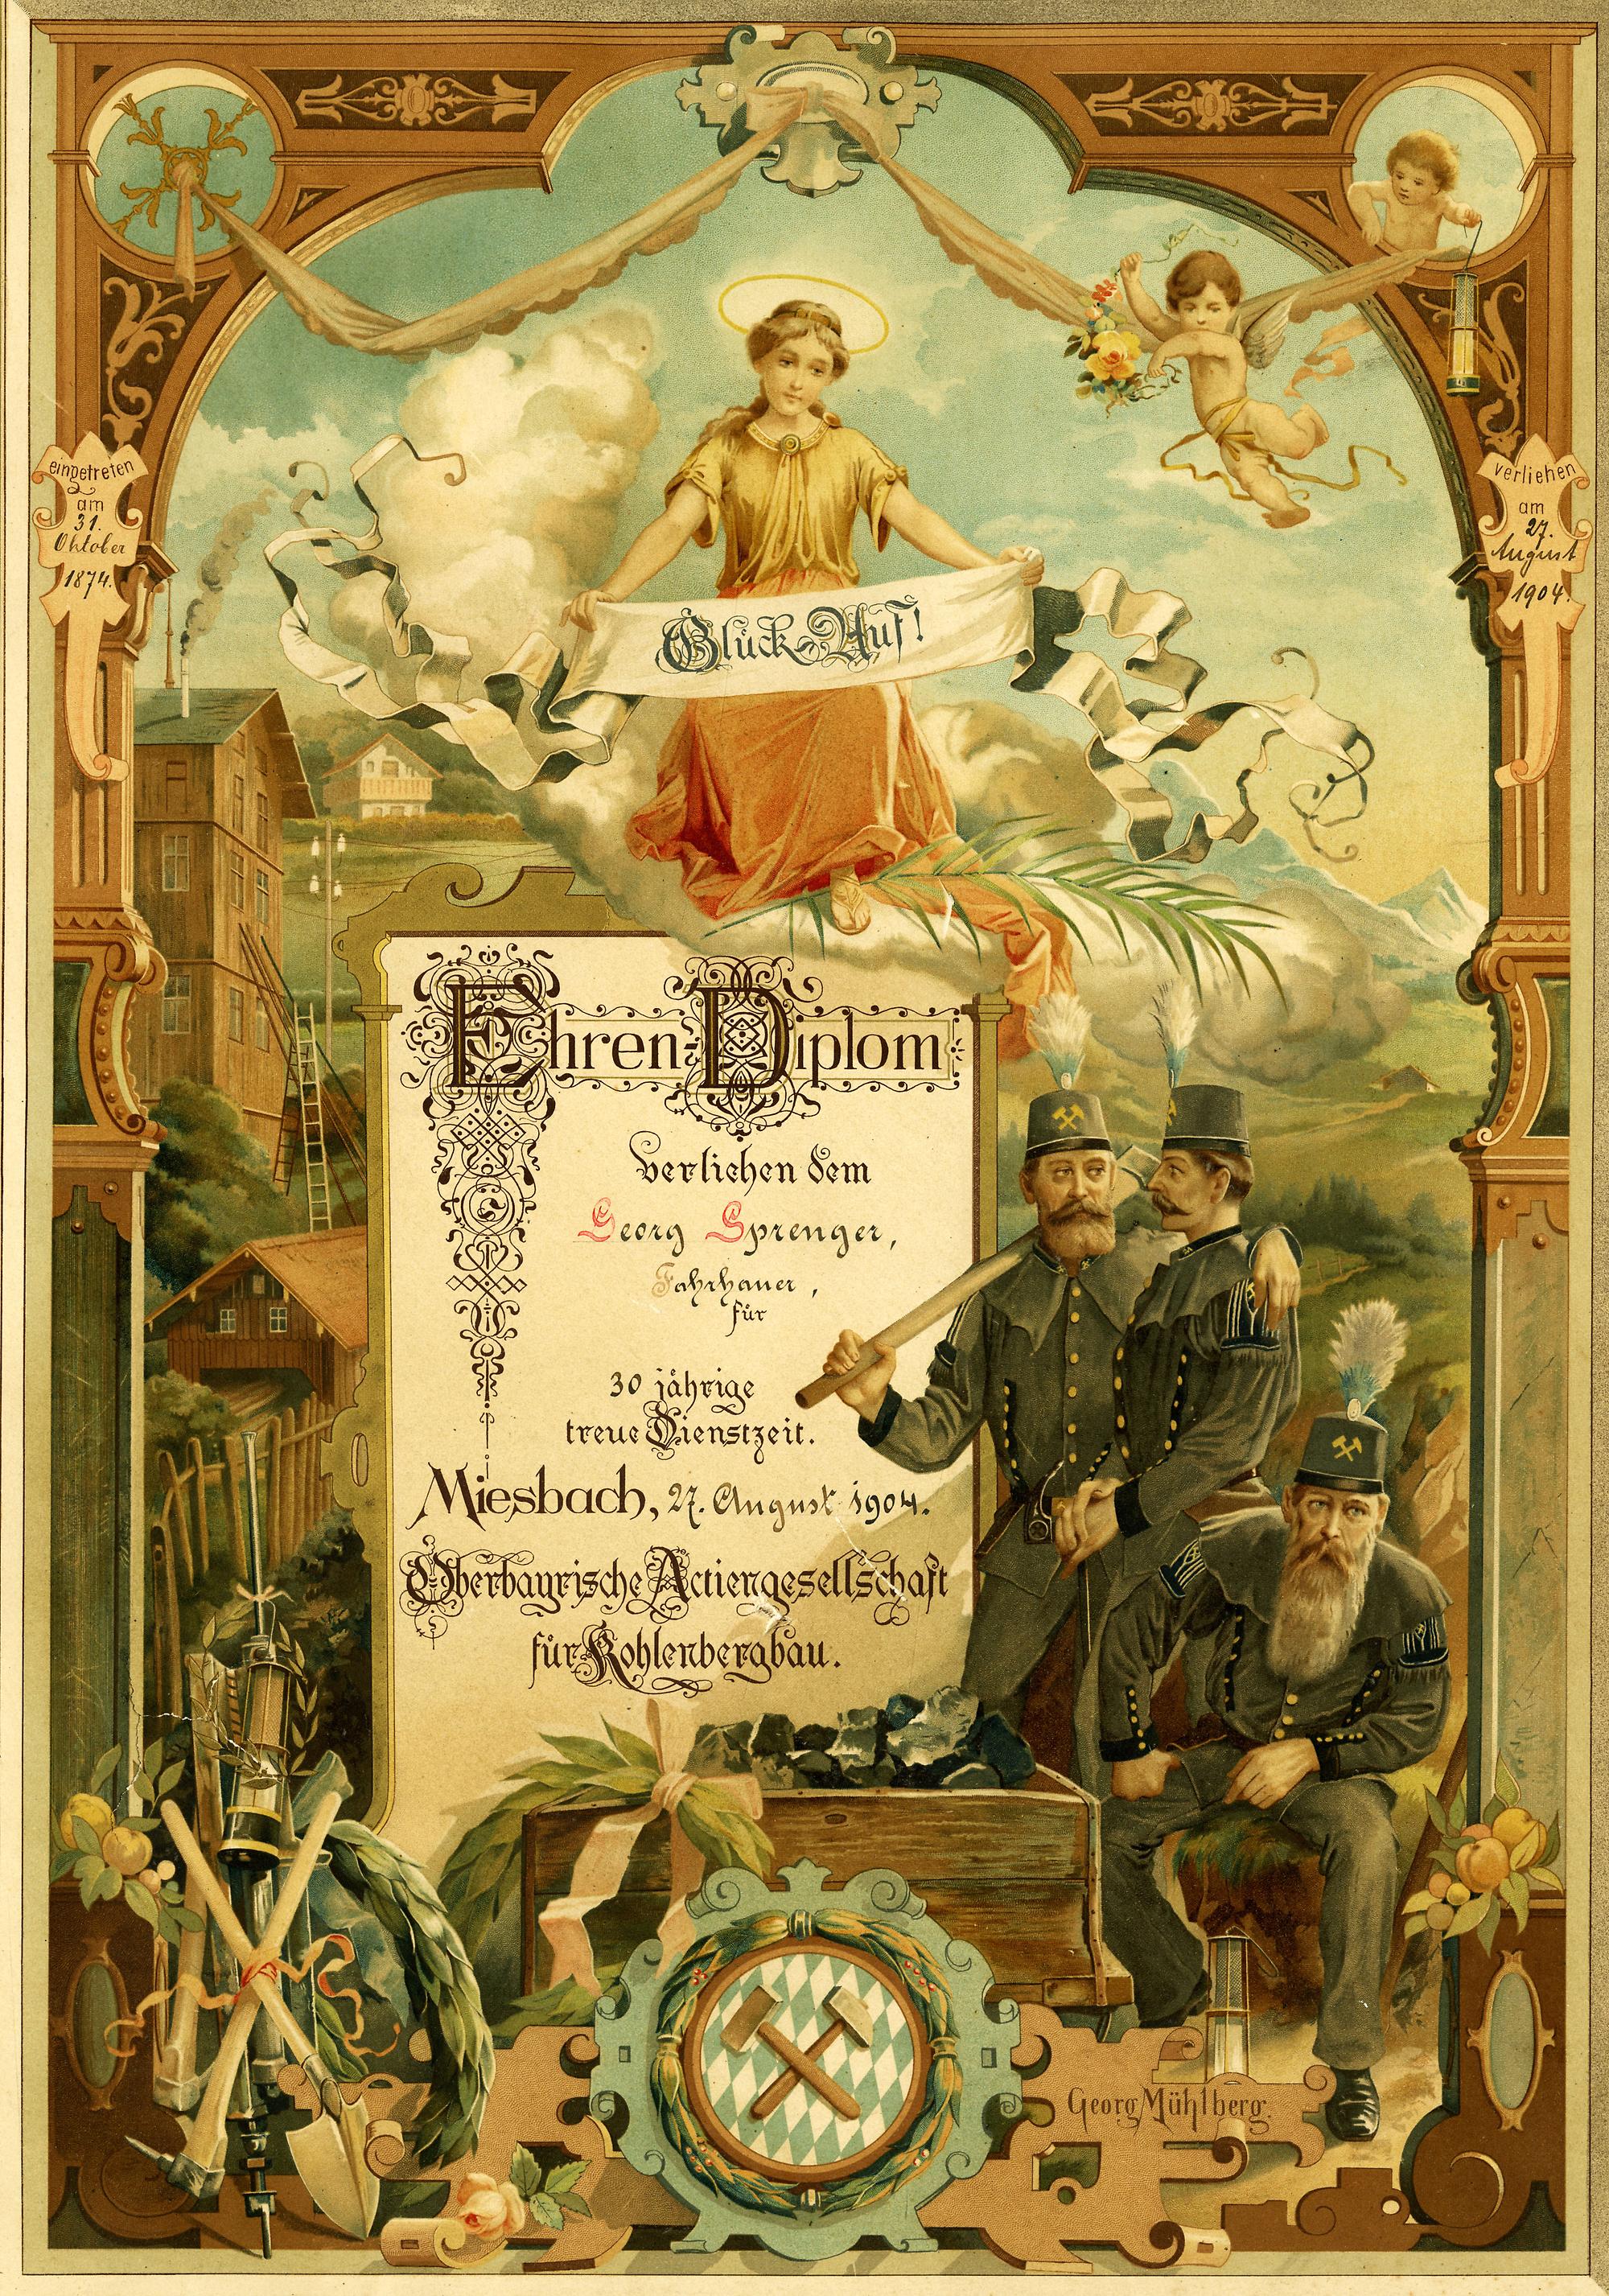 Ehrendiplom der Oberbayerischen Aktiengesellschaft für Kohlebergbau für den Miesbacher Fahrhauer Georg Sprenger, 1904.